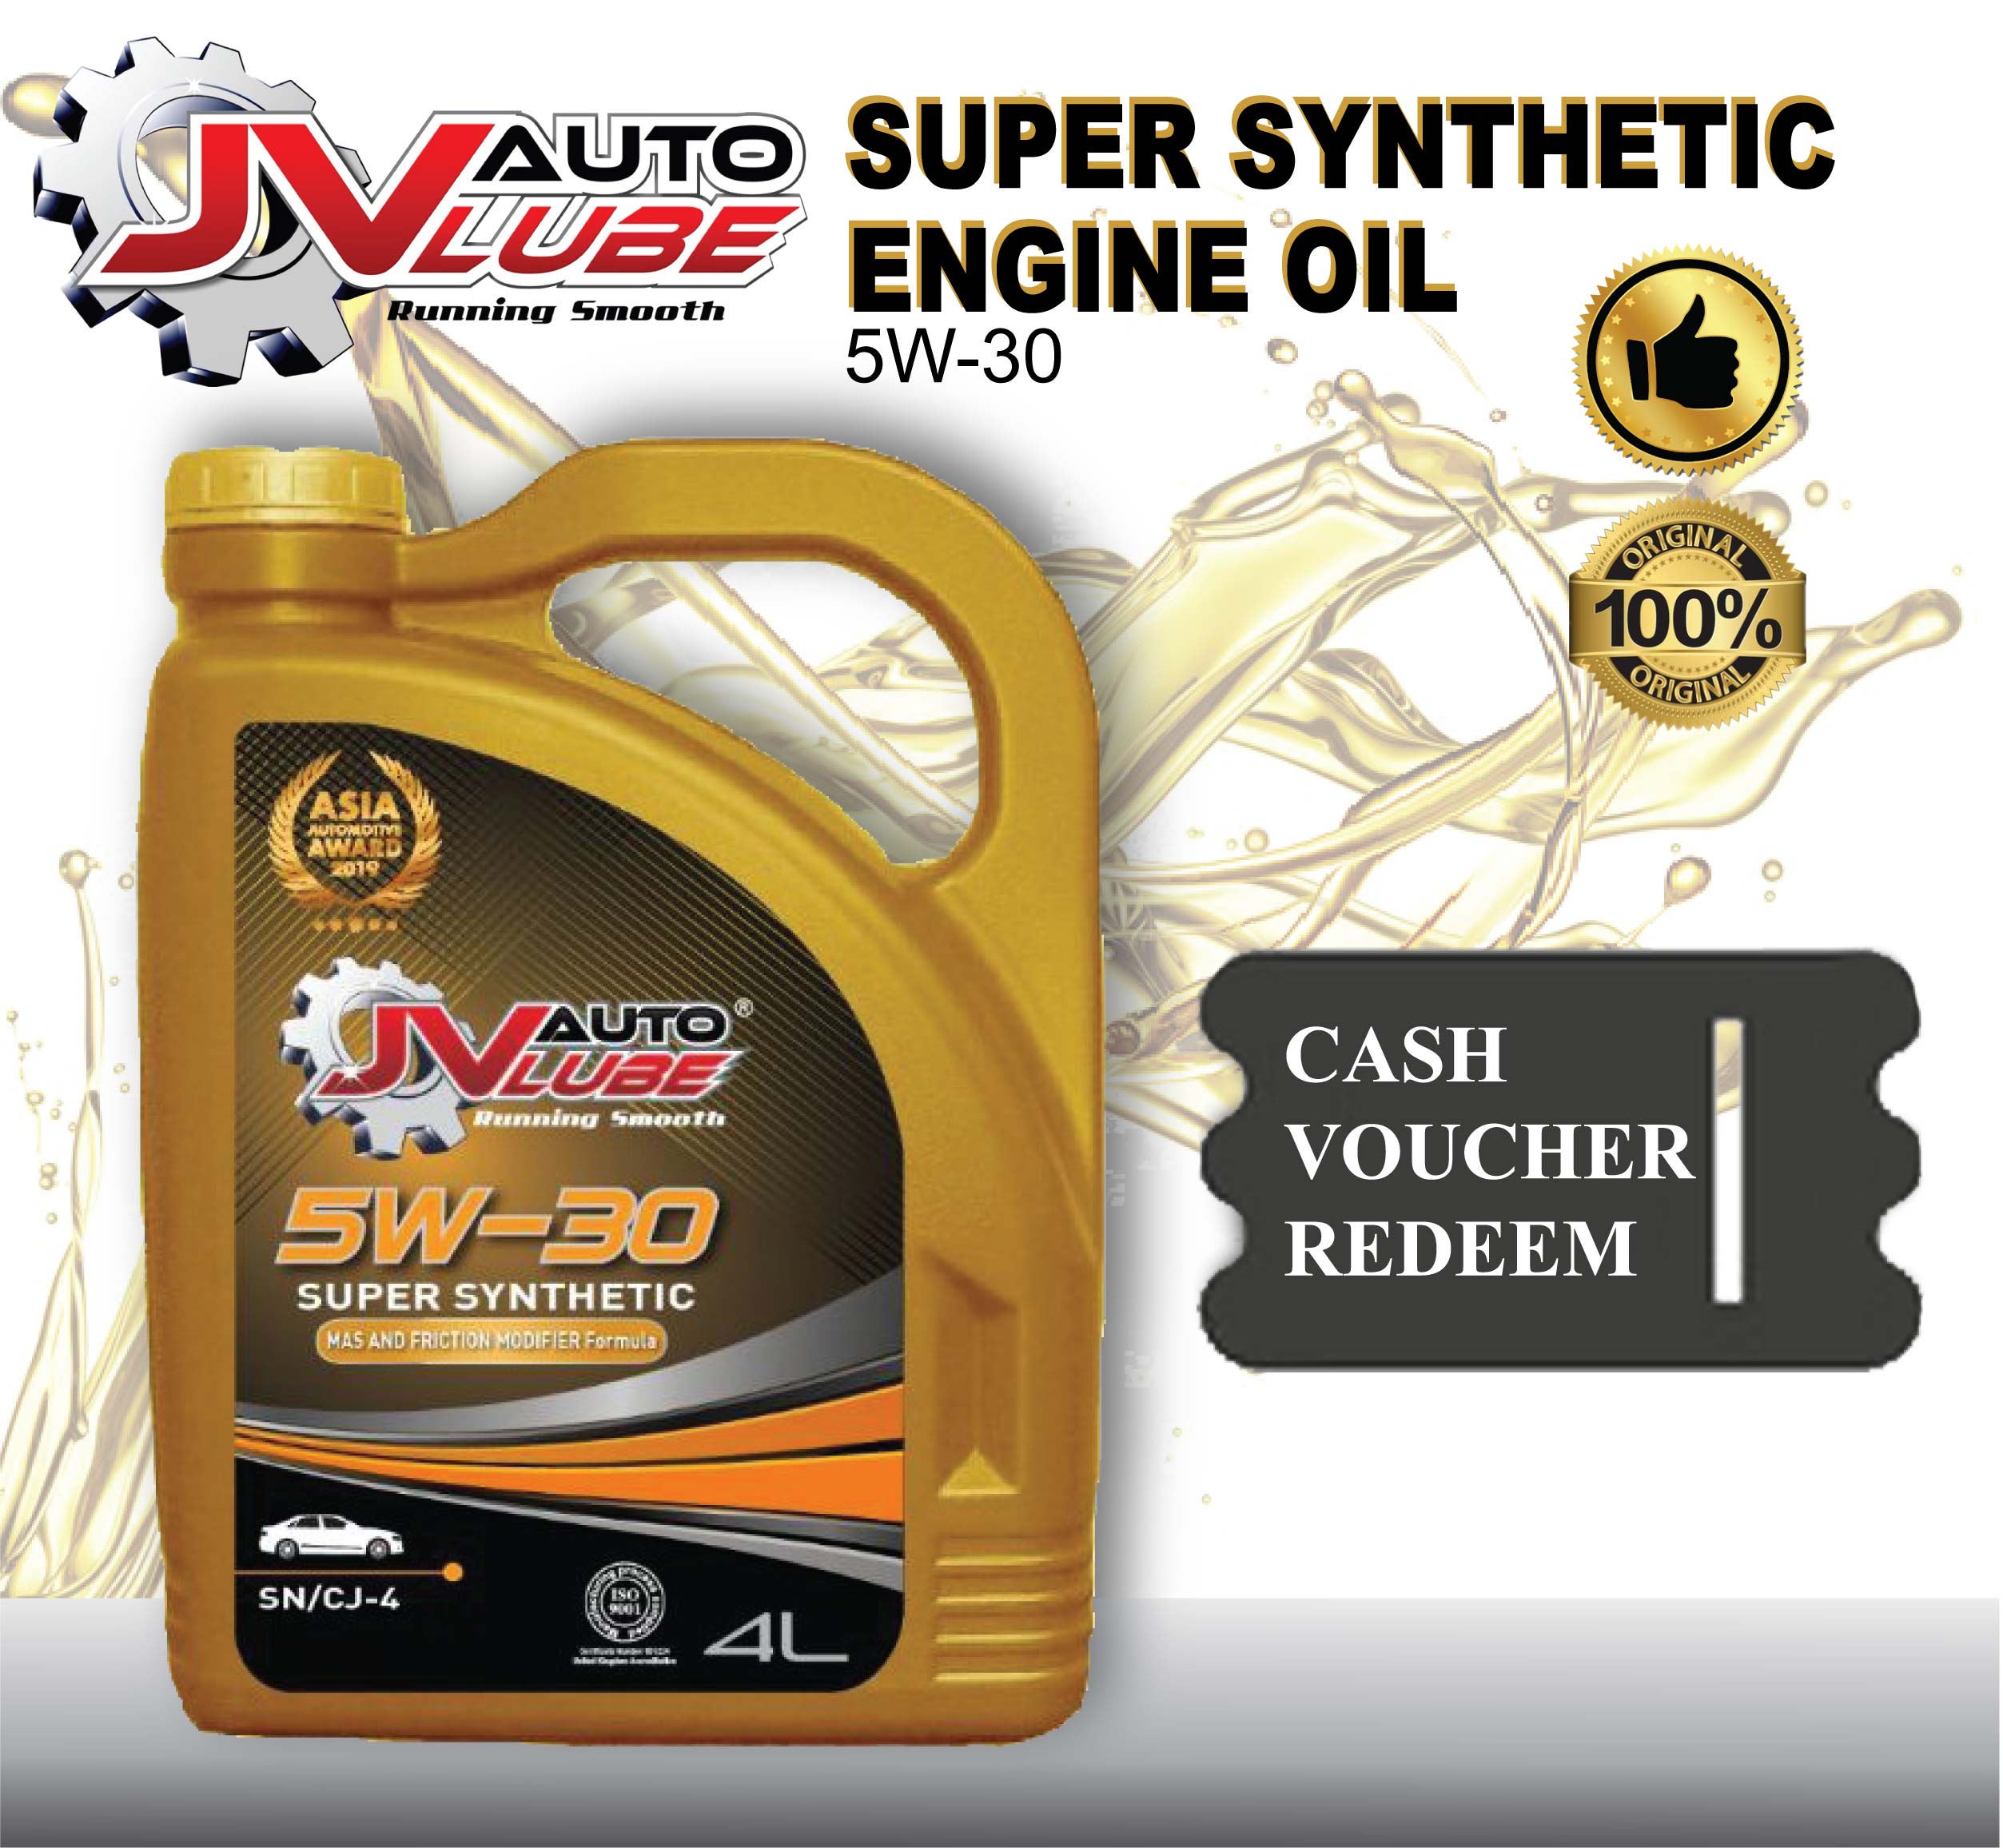 ( Cash Voucher Redeem ) JV Auto Lube - Engine Oil 5W-30 Original